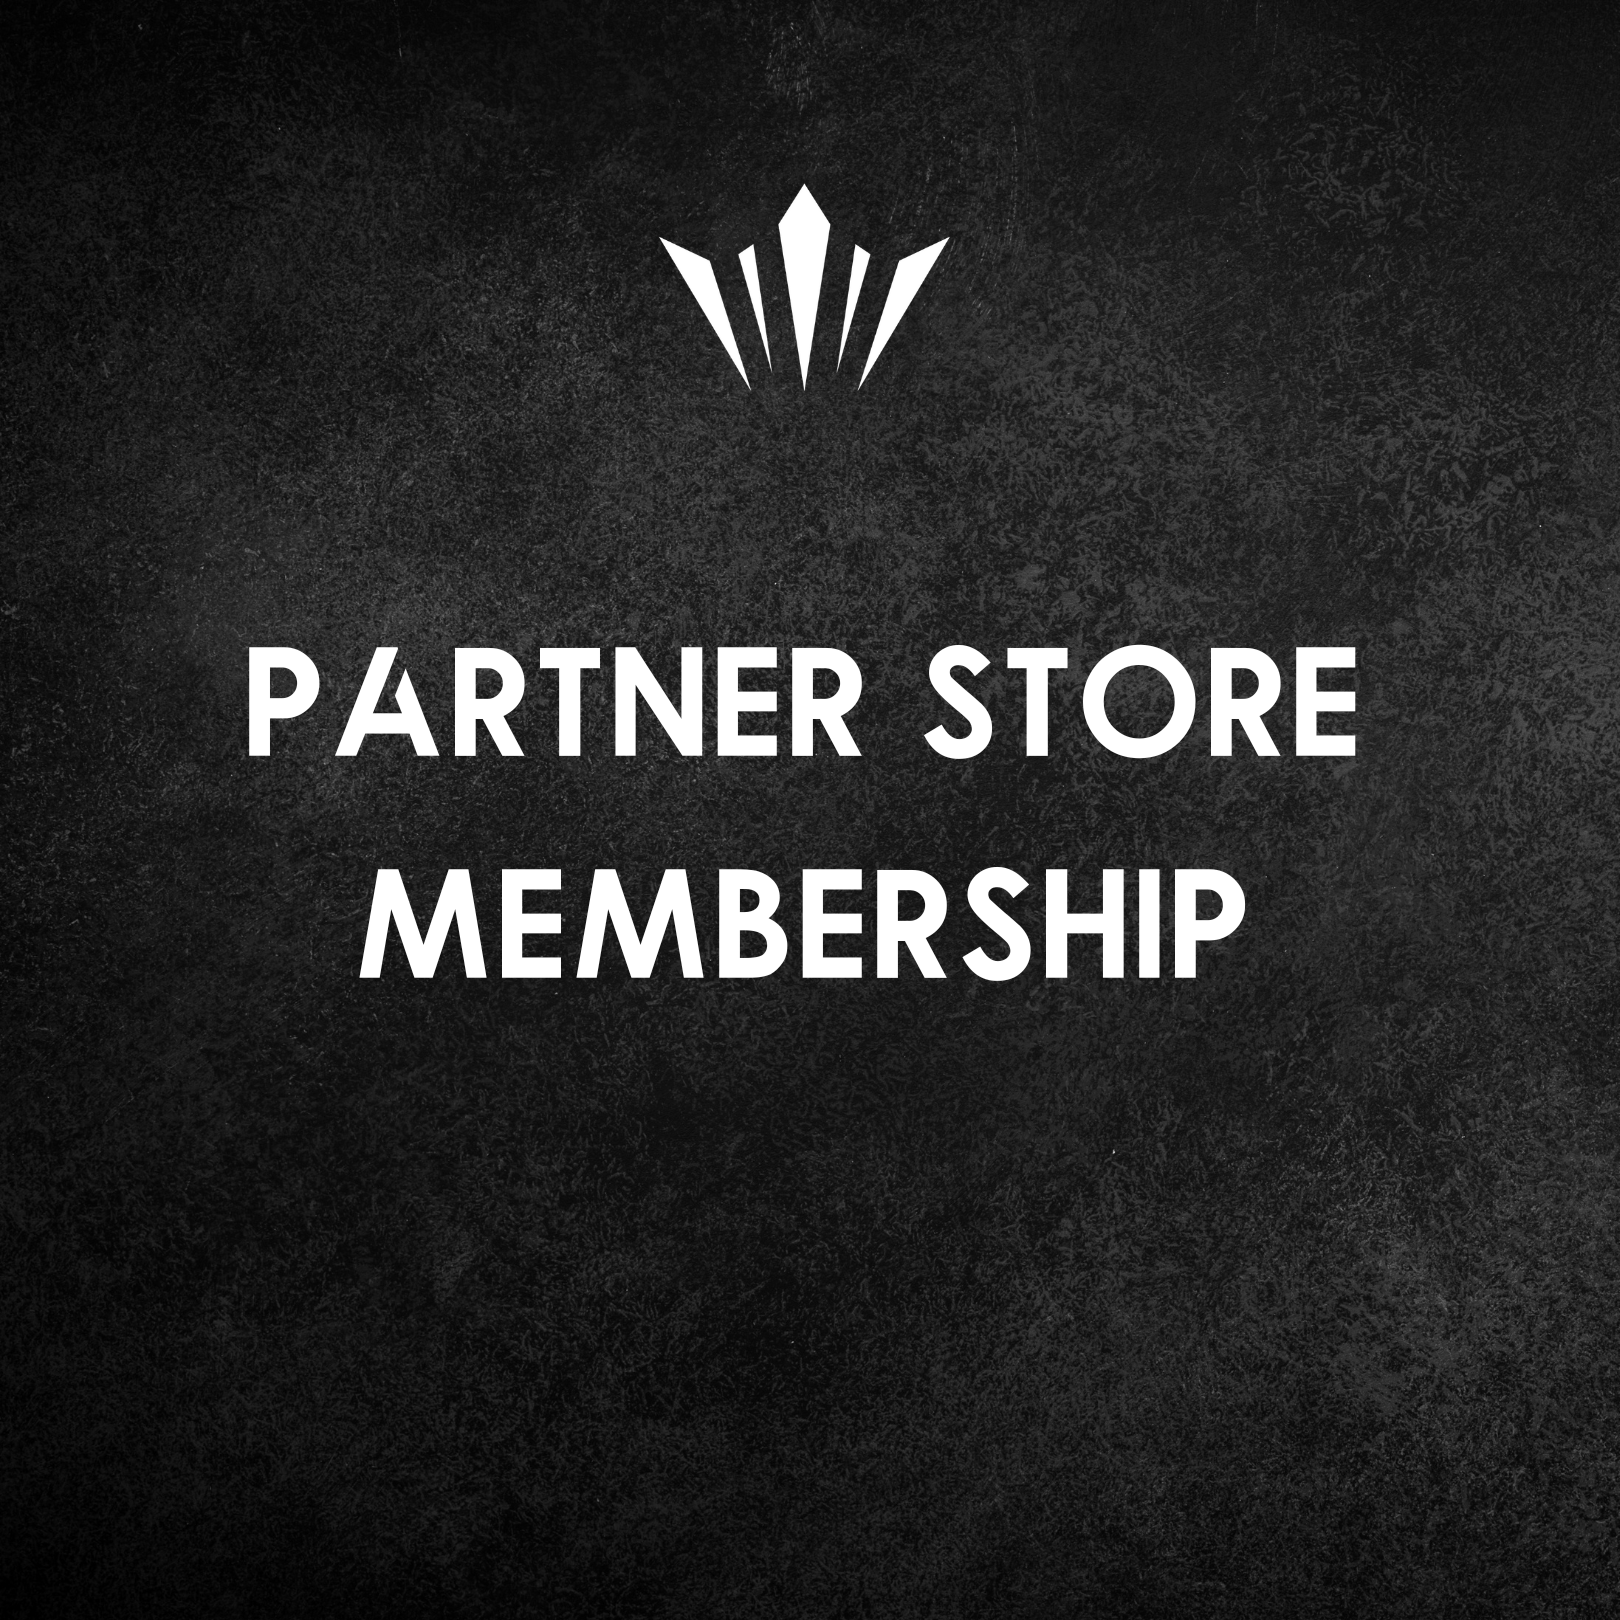 ALVA Partner Store Membership (1 Month Free Trial)